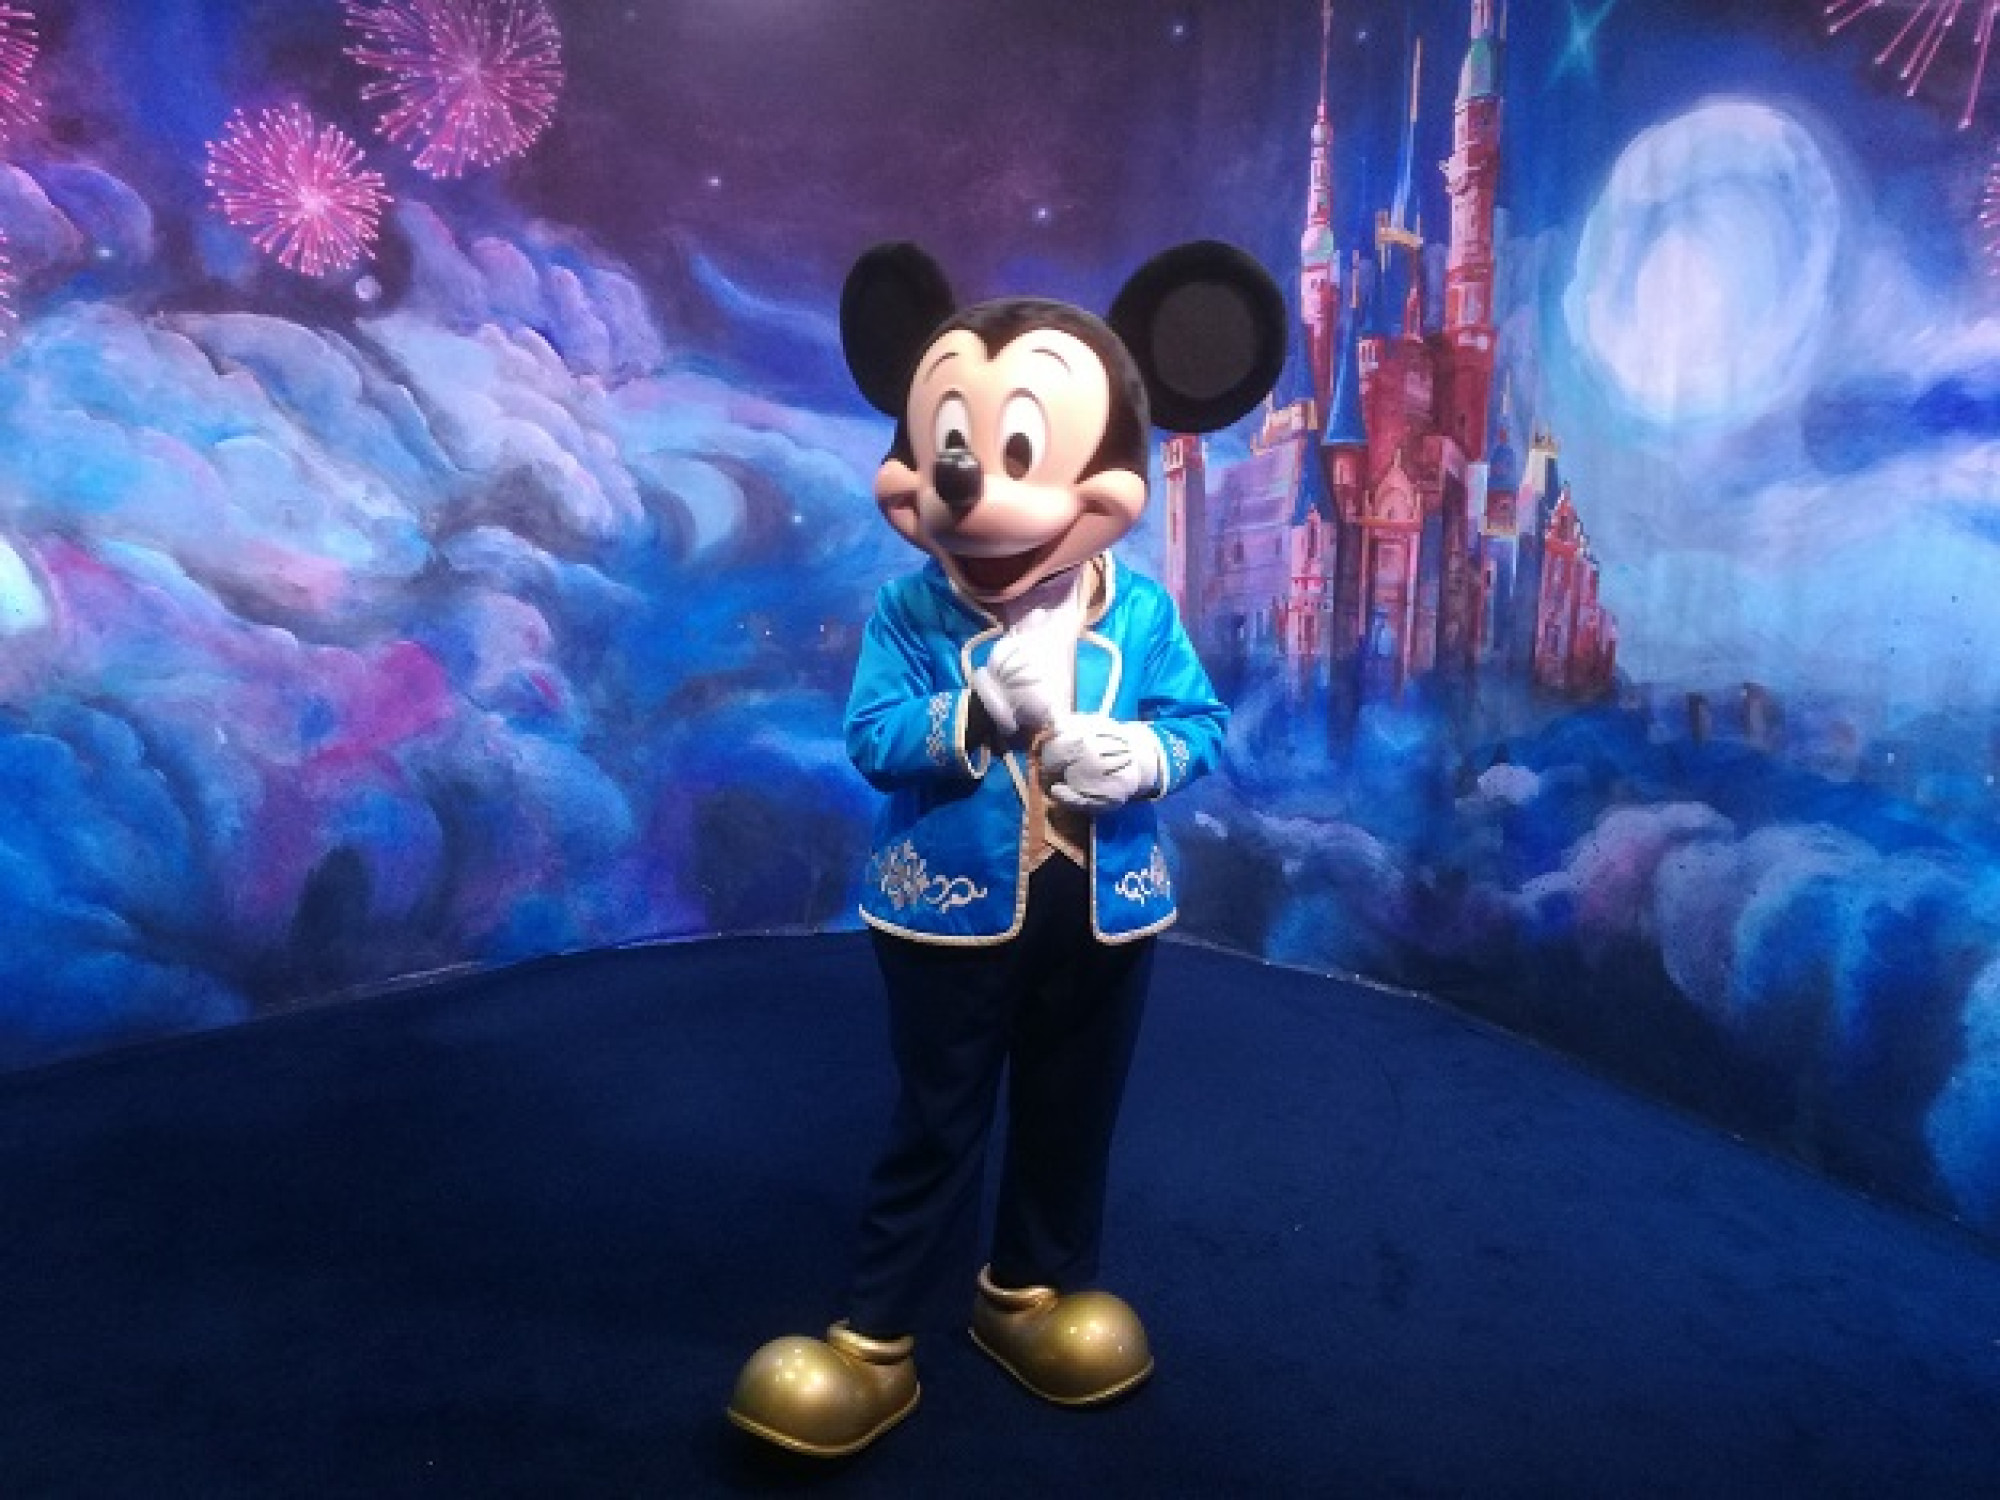 上海ディズニーランドのミッキーマウスとのキャラクターグリーティング キャステル Castel ディズニー情報